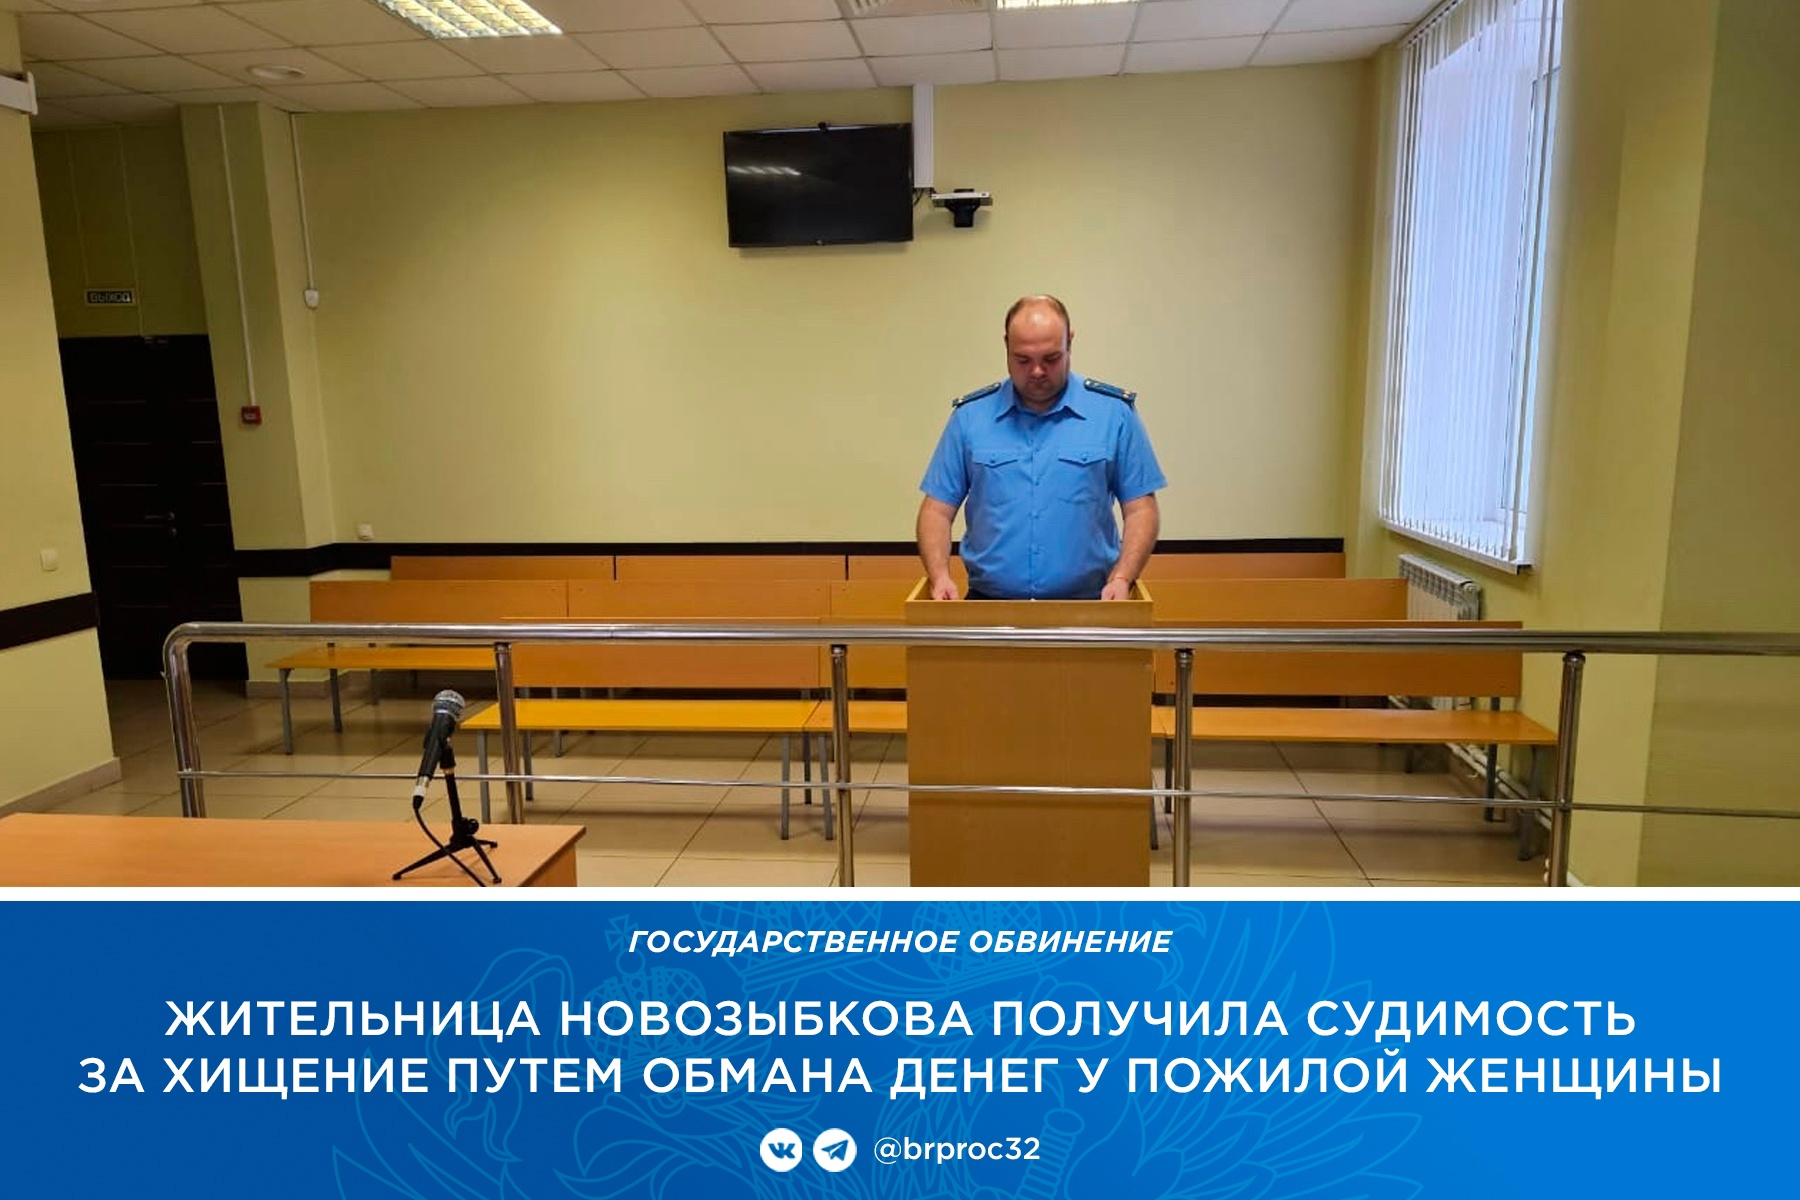 Жительница Новозыбкова обманула пенсионерку на 300 тысяч рублей и получила судимость